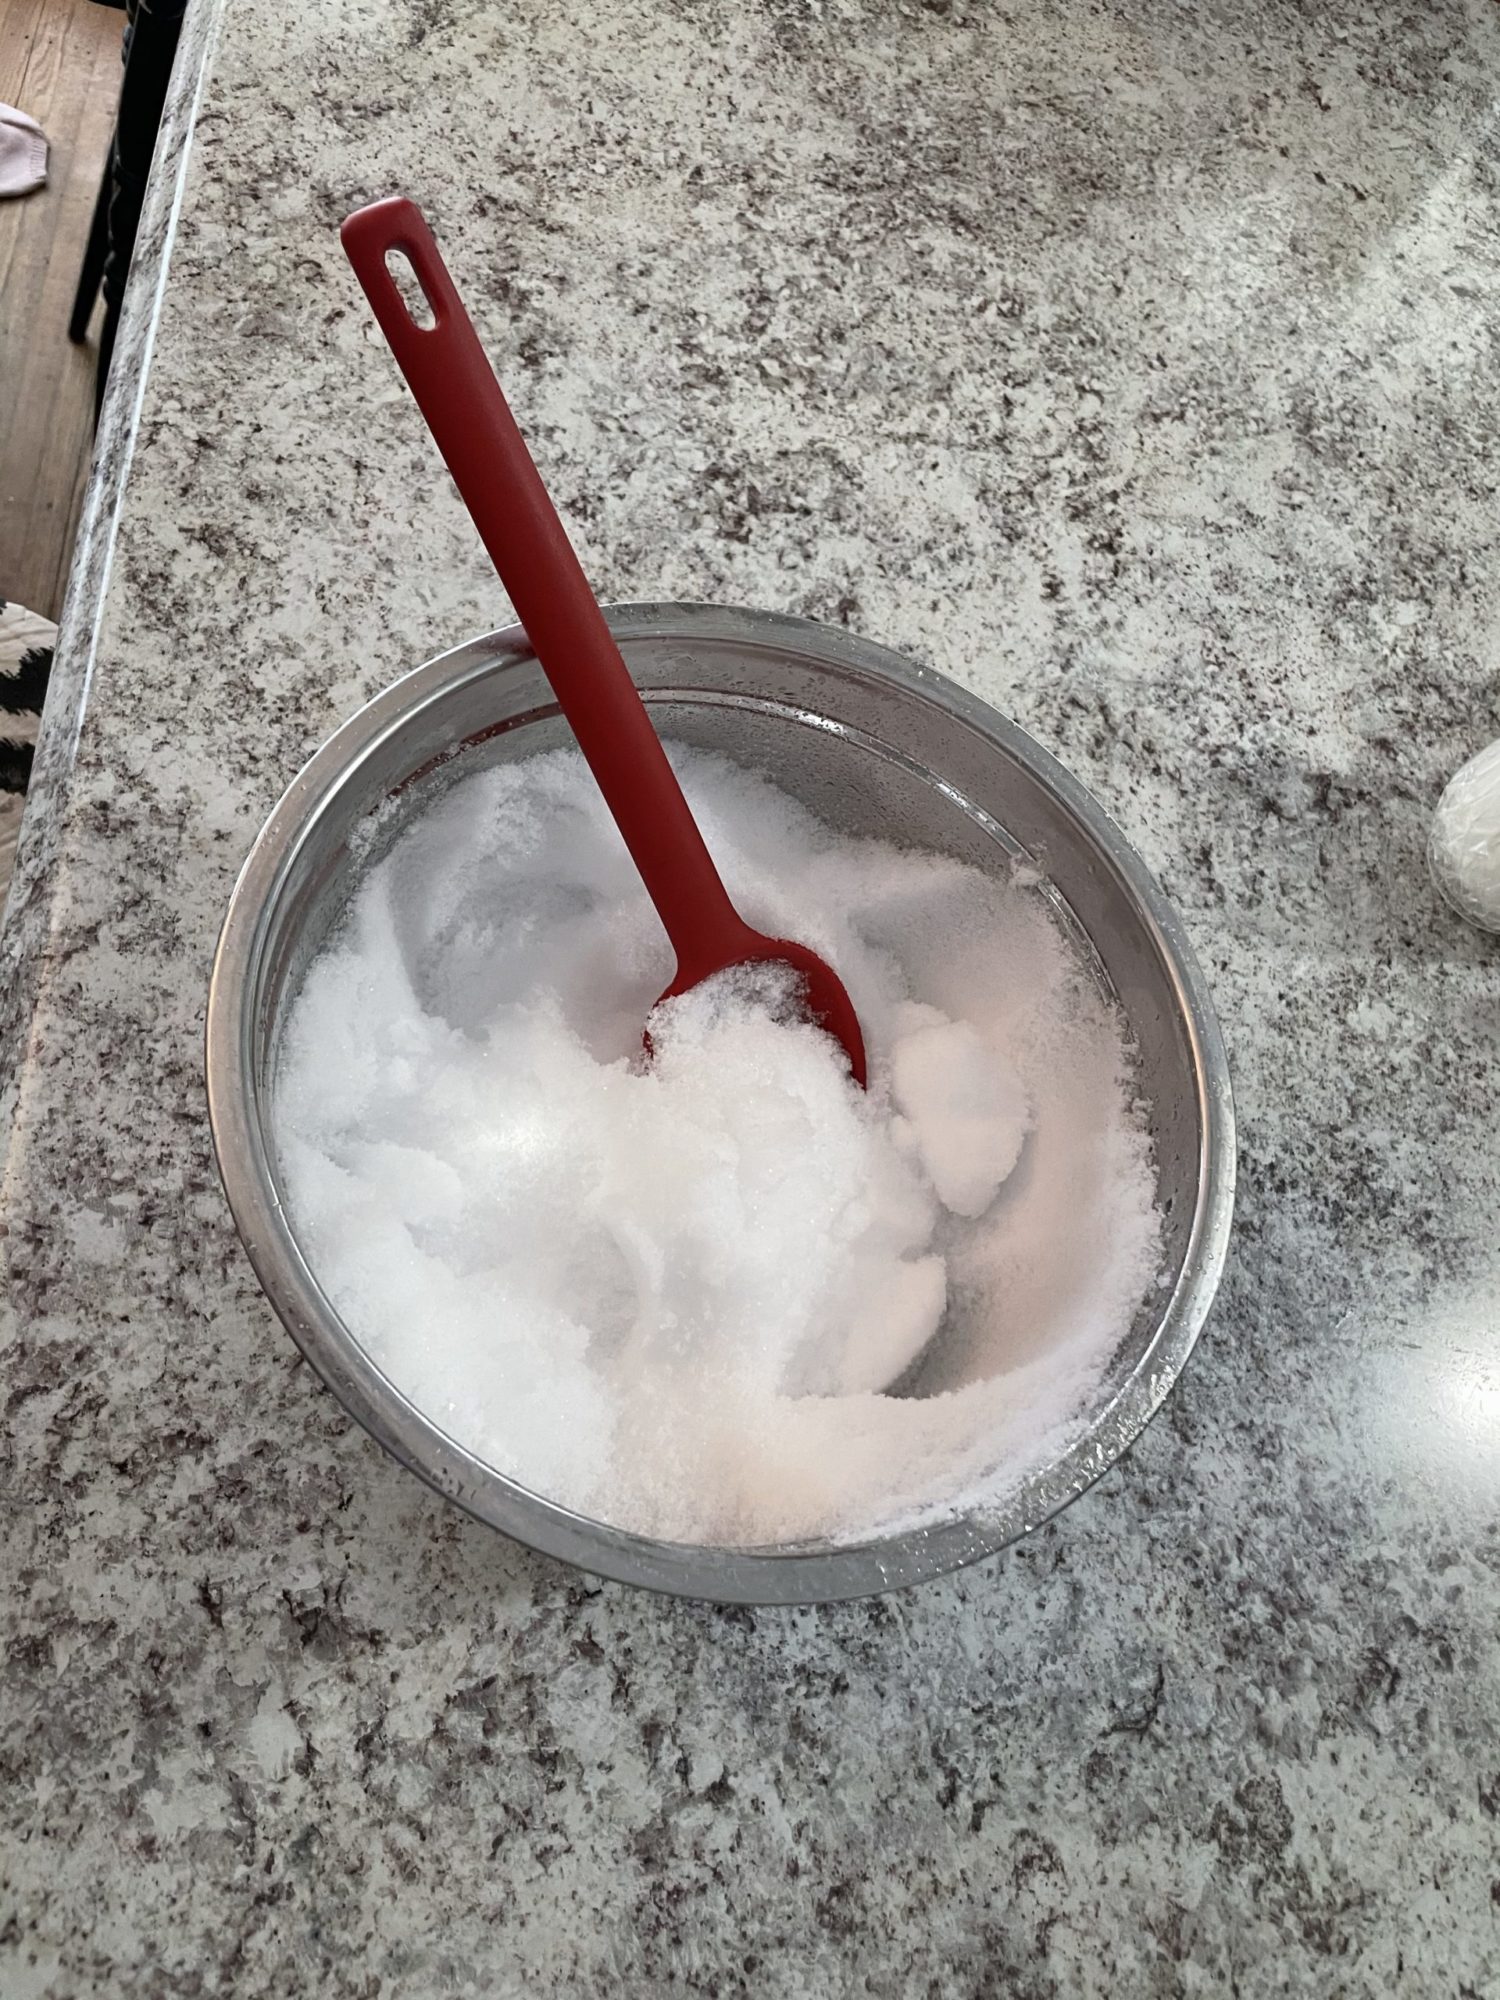 Bowl of snow, to make snow ice cream